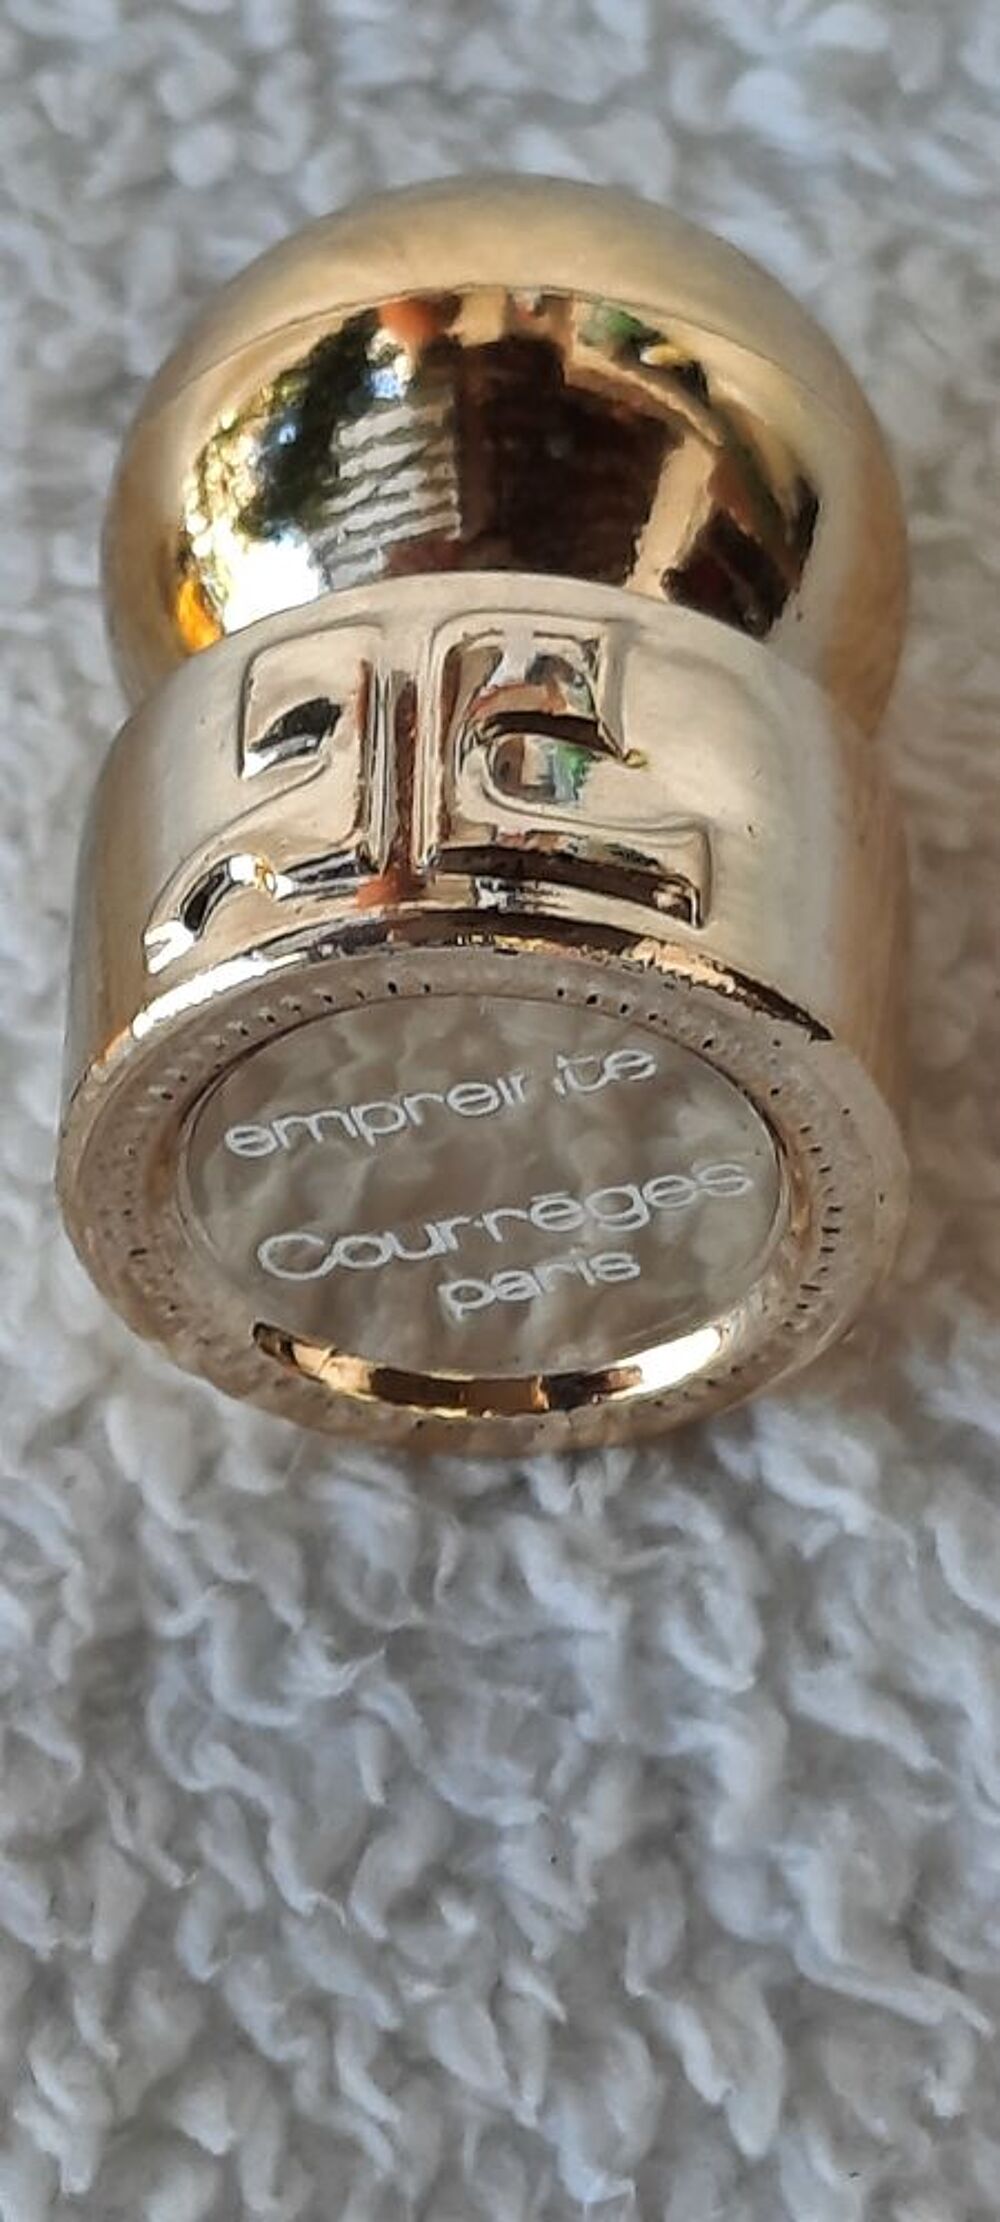 4 miniatures parfum de collection originales courrege 